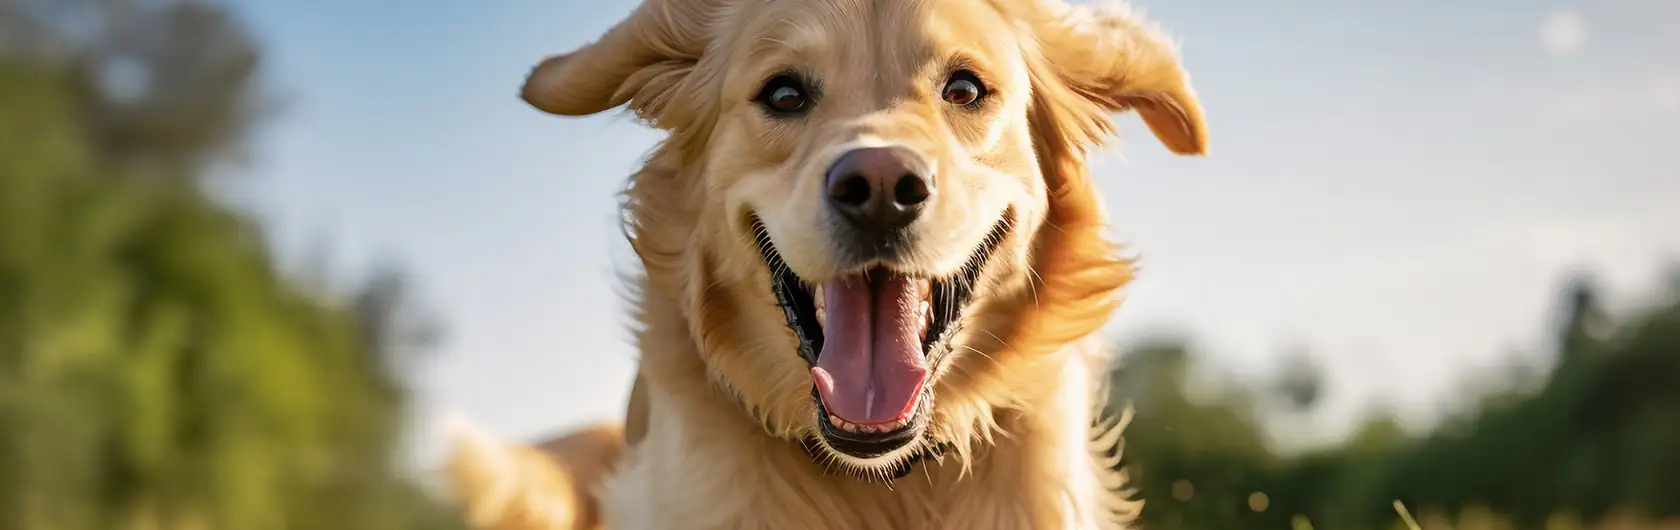 La Importancia de la Alimentación en el Comportamiento Canino y alimento para mascotas de calidad nutribon